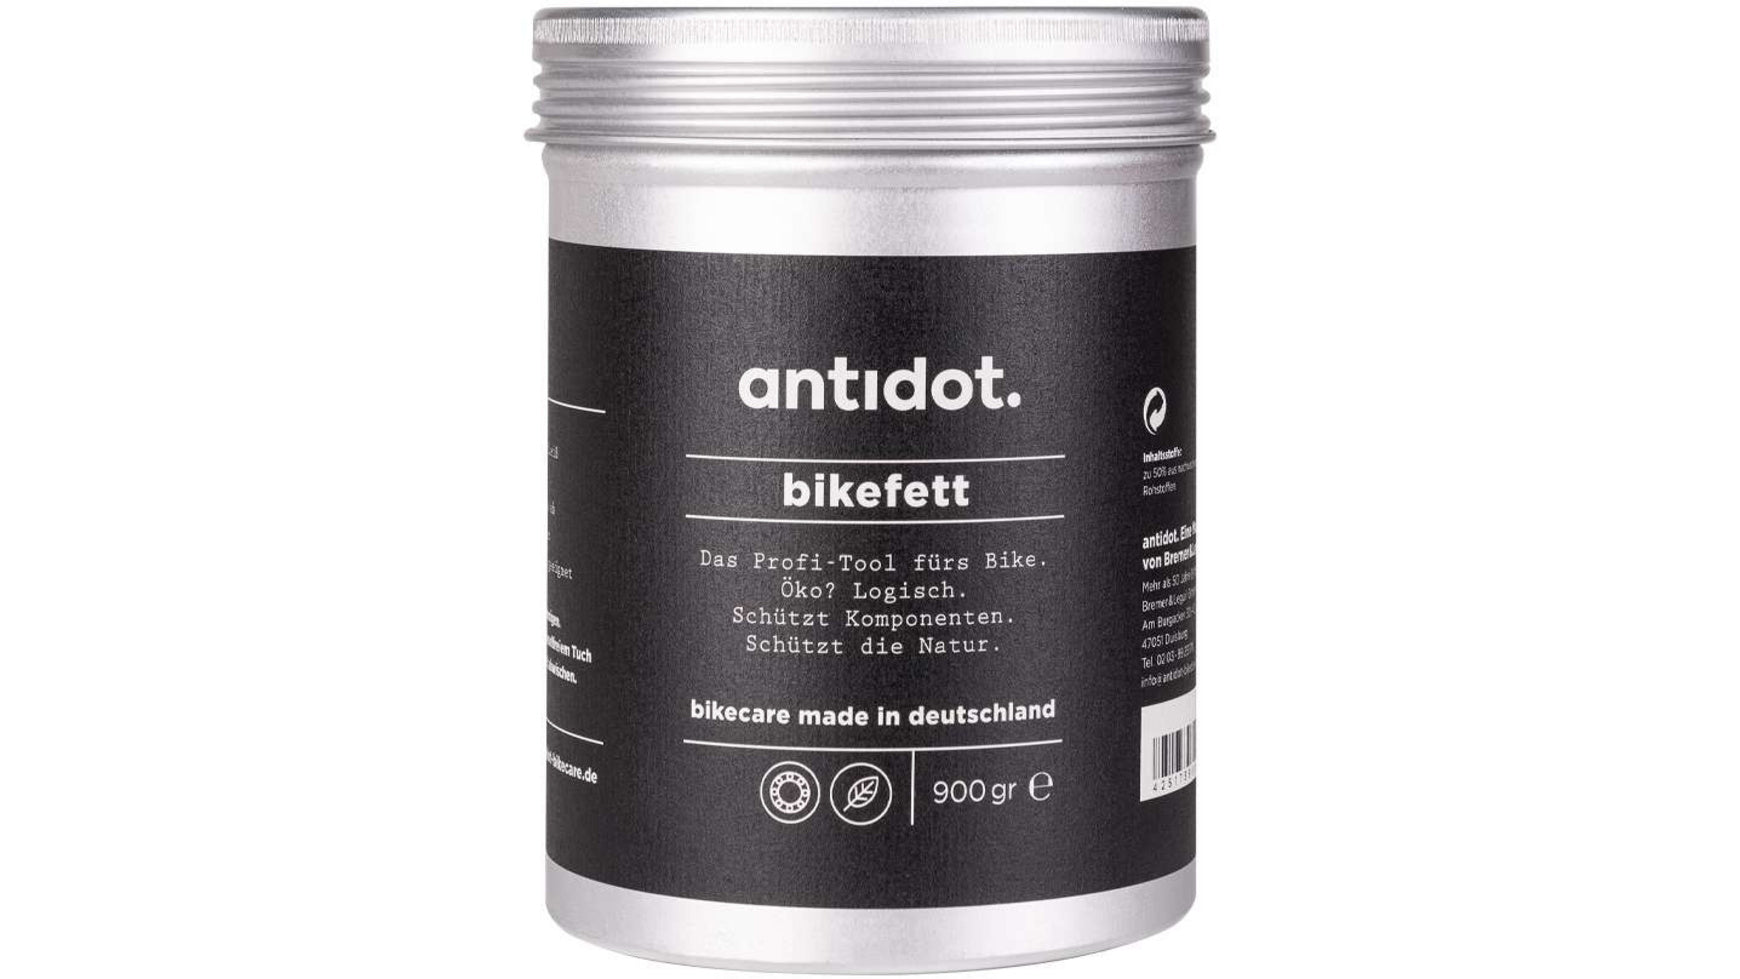 http://boc24.de/cdn/shop/products/az_antidot--bikefett-900g-0-brown-222473.jpg?v=1687872824